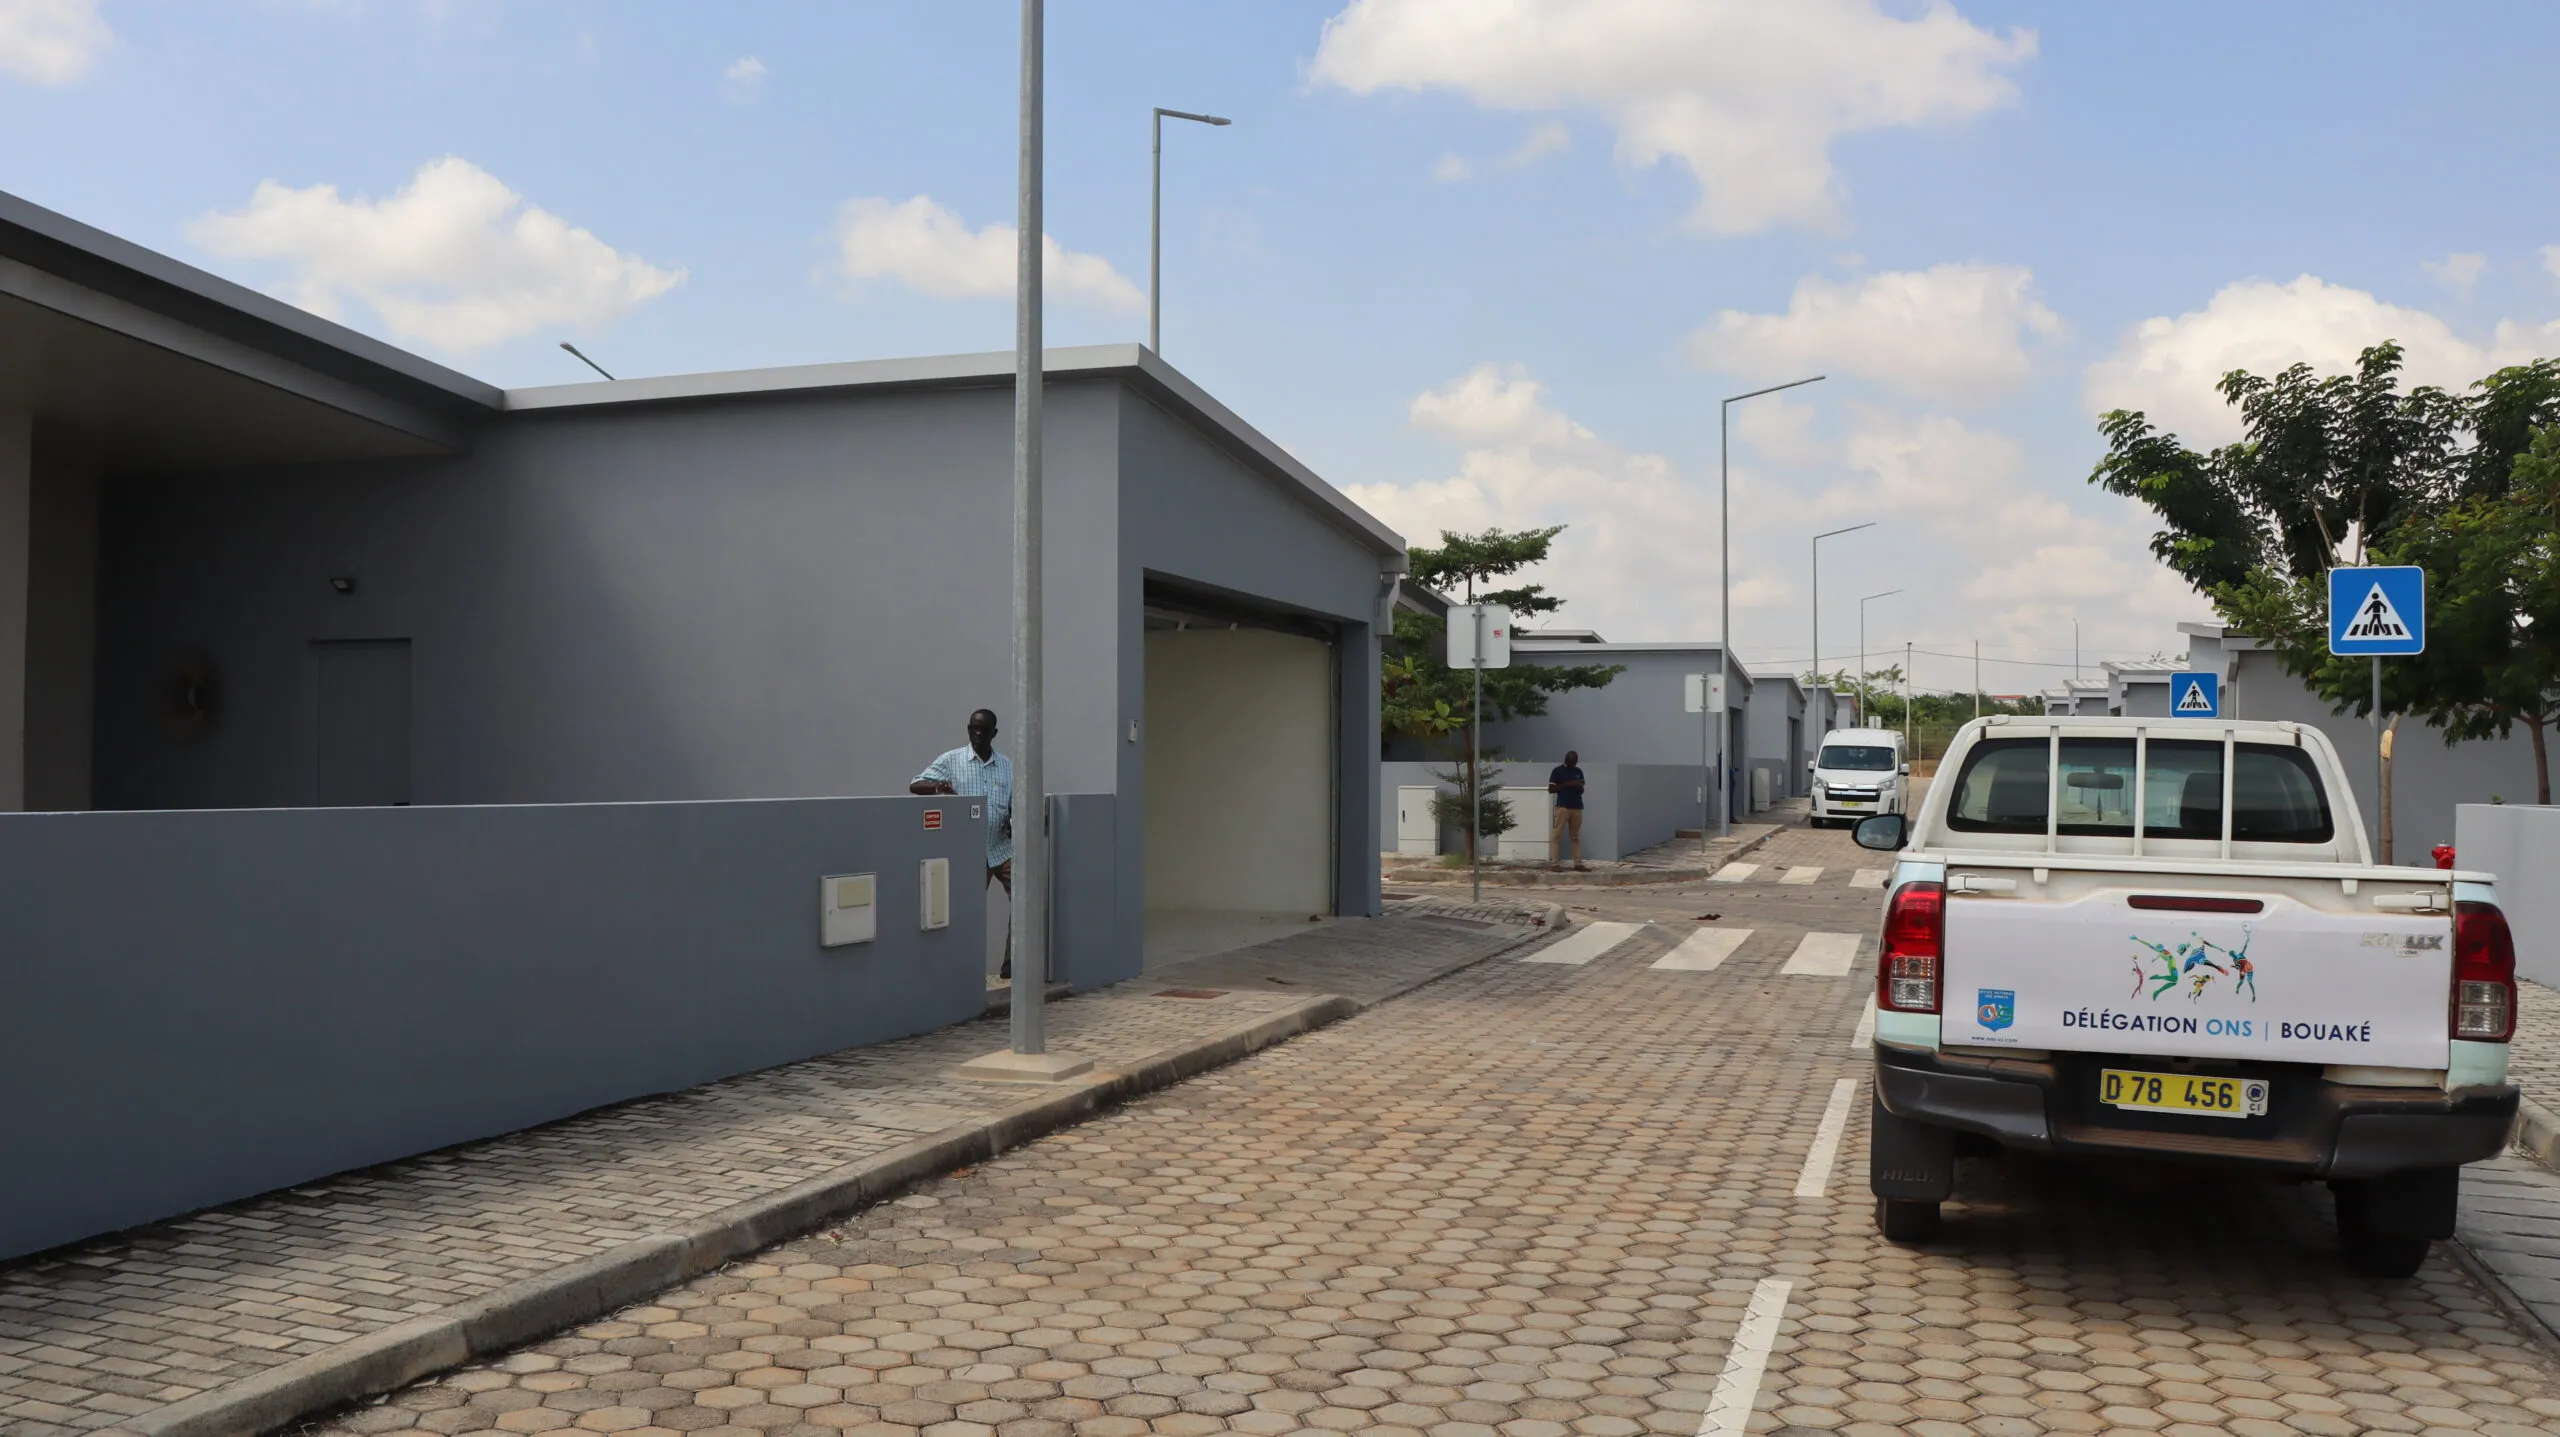 La cité-CAN de Bouaké. La deuxième ville du pays est désormais accessible en quelques heures depuis Abidjan grâce à une autoroute à péage flambant neuve.